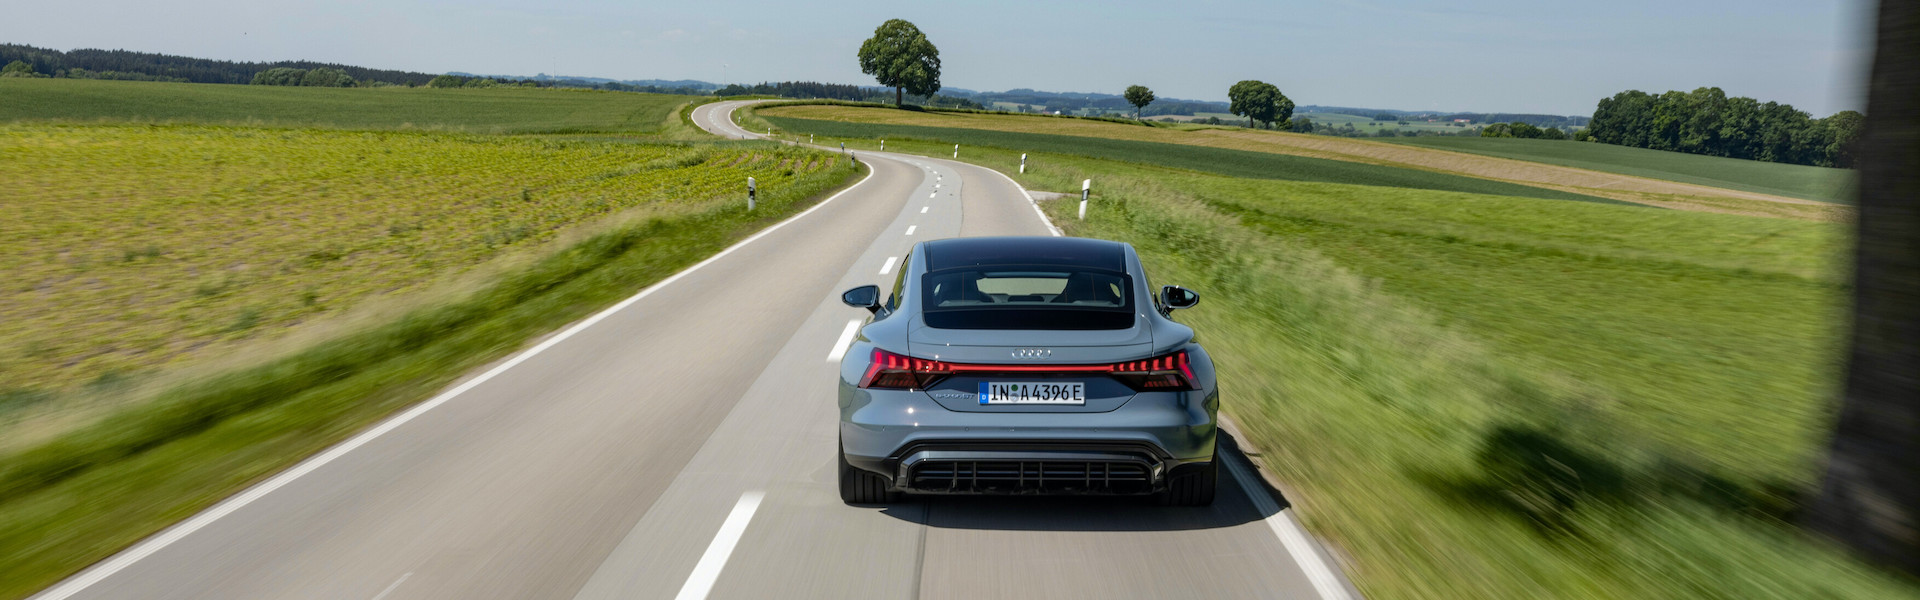 Prikaz dosega v električnih vozilih Audi daje zanesljivo sliko